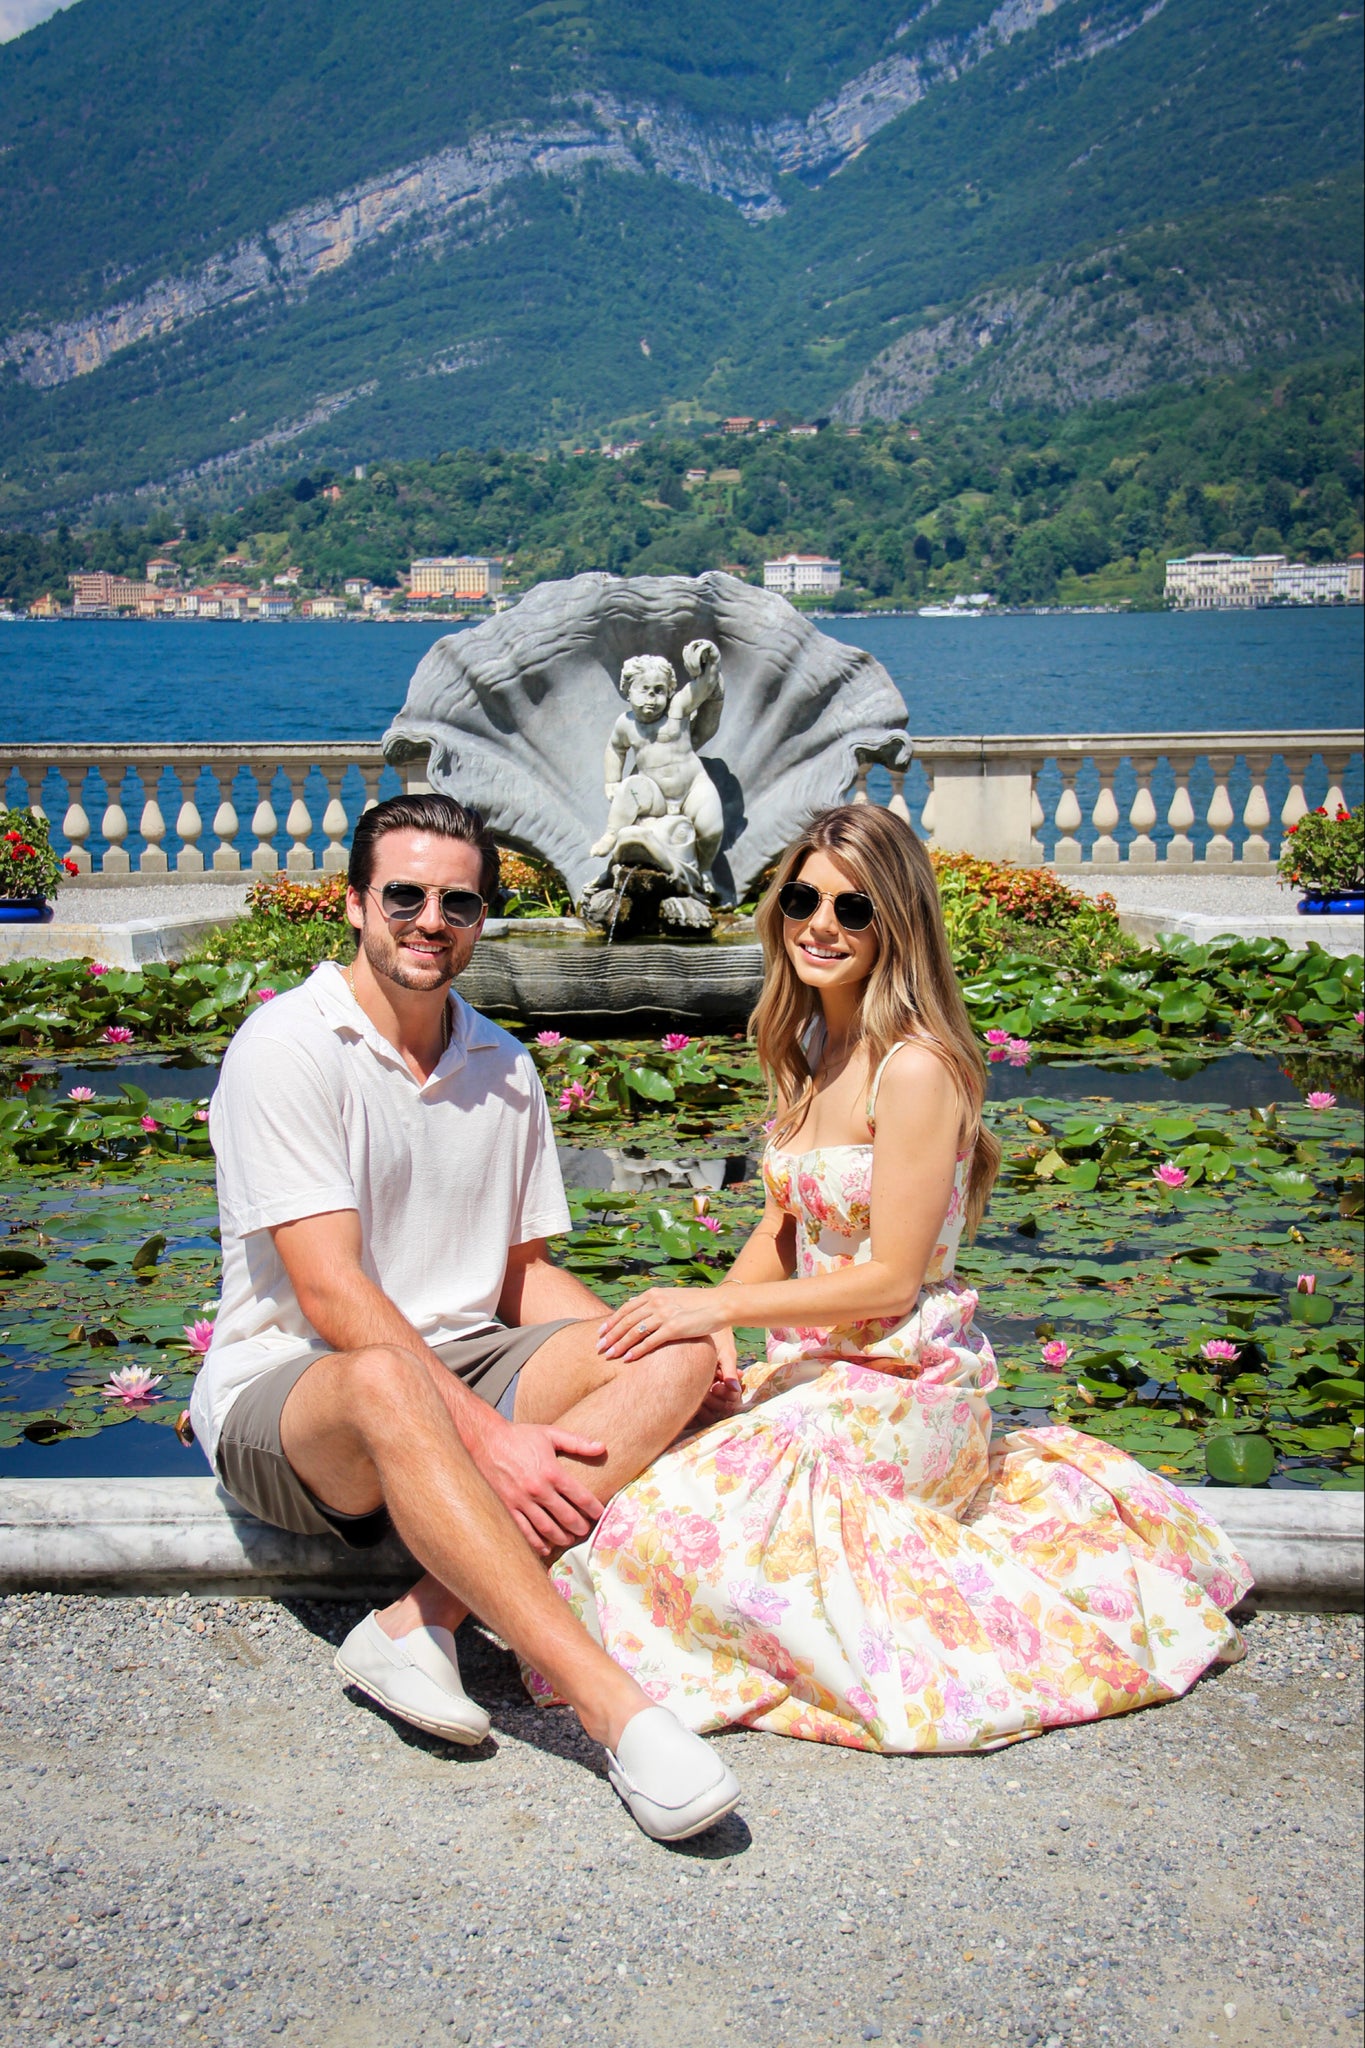 A Romantic Proposal at Villa Melzi in Bellagio, Lake Como